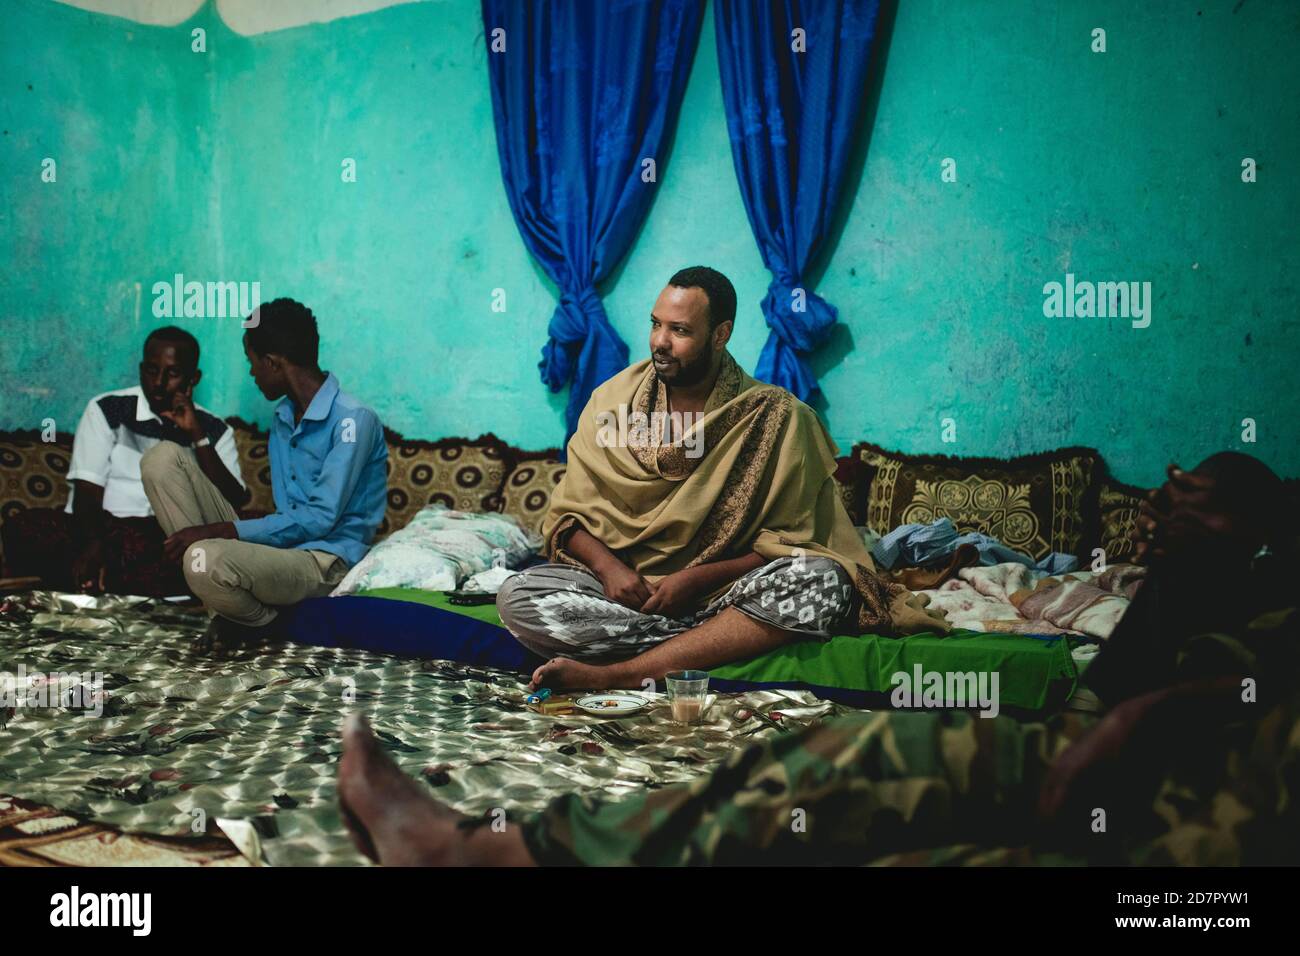 Barkhat, einflussreicher Weihrauchhändler, der 70% des Handels kontrolliert, empfängt seine Gäste während eines Aufenthalts, Erigavo, Sanaag, Somaliland, Somalia Stockfoto